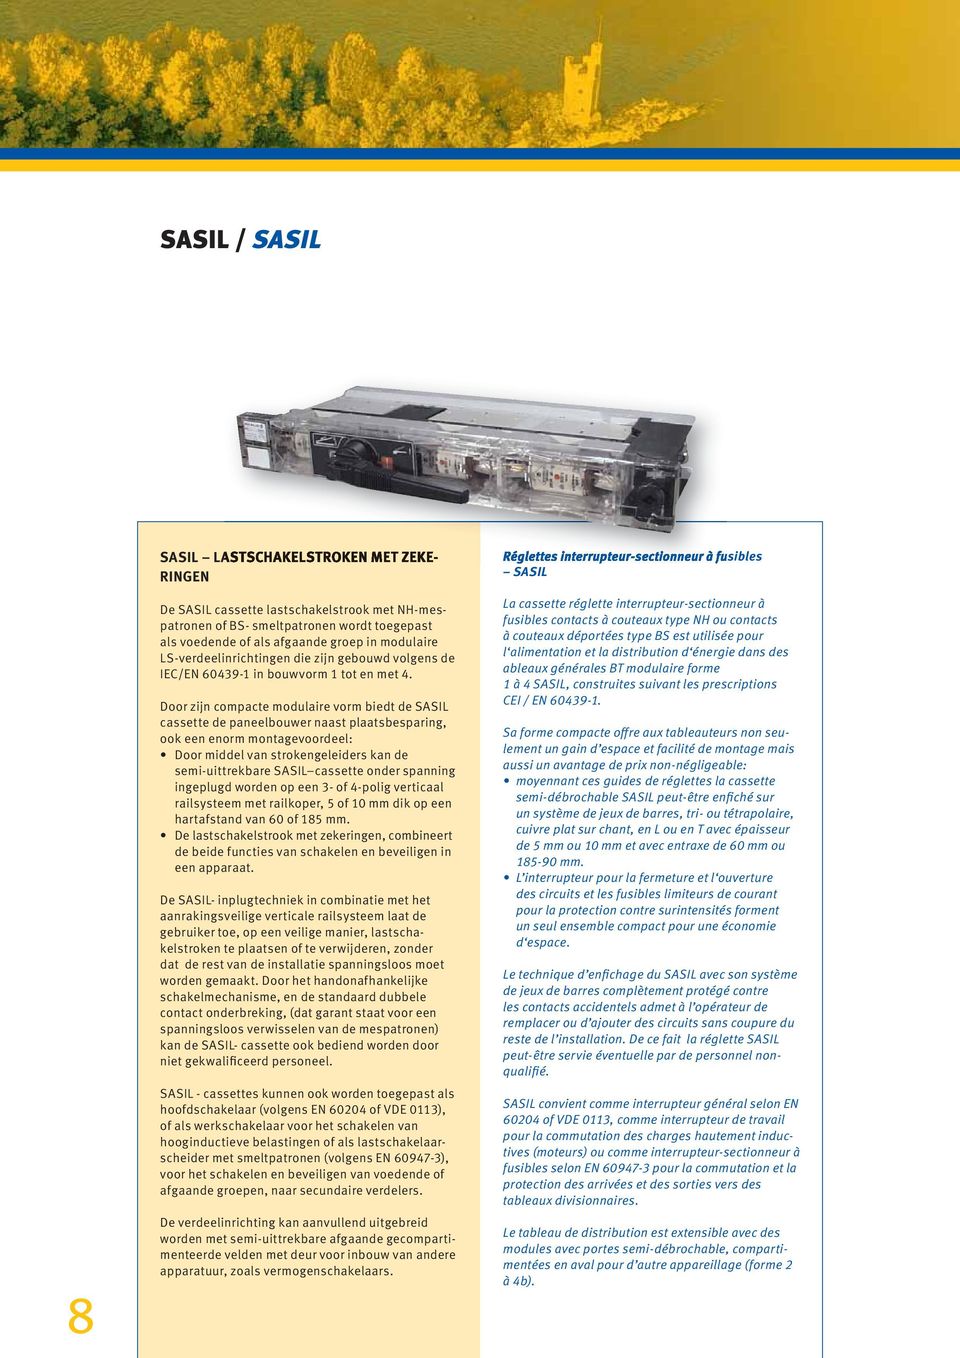 Door zijn compacte modulaire vorm biedt de SASIL cassette de paneelbouwer naast plaatsbesparing, ook een enorm montagevoordeel: Door middel van strokengeleiders kan de semi-uittrekbare SASIL cassette